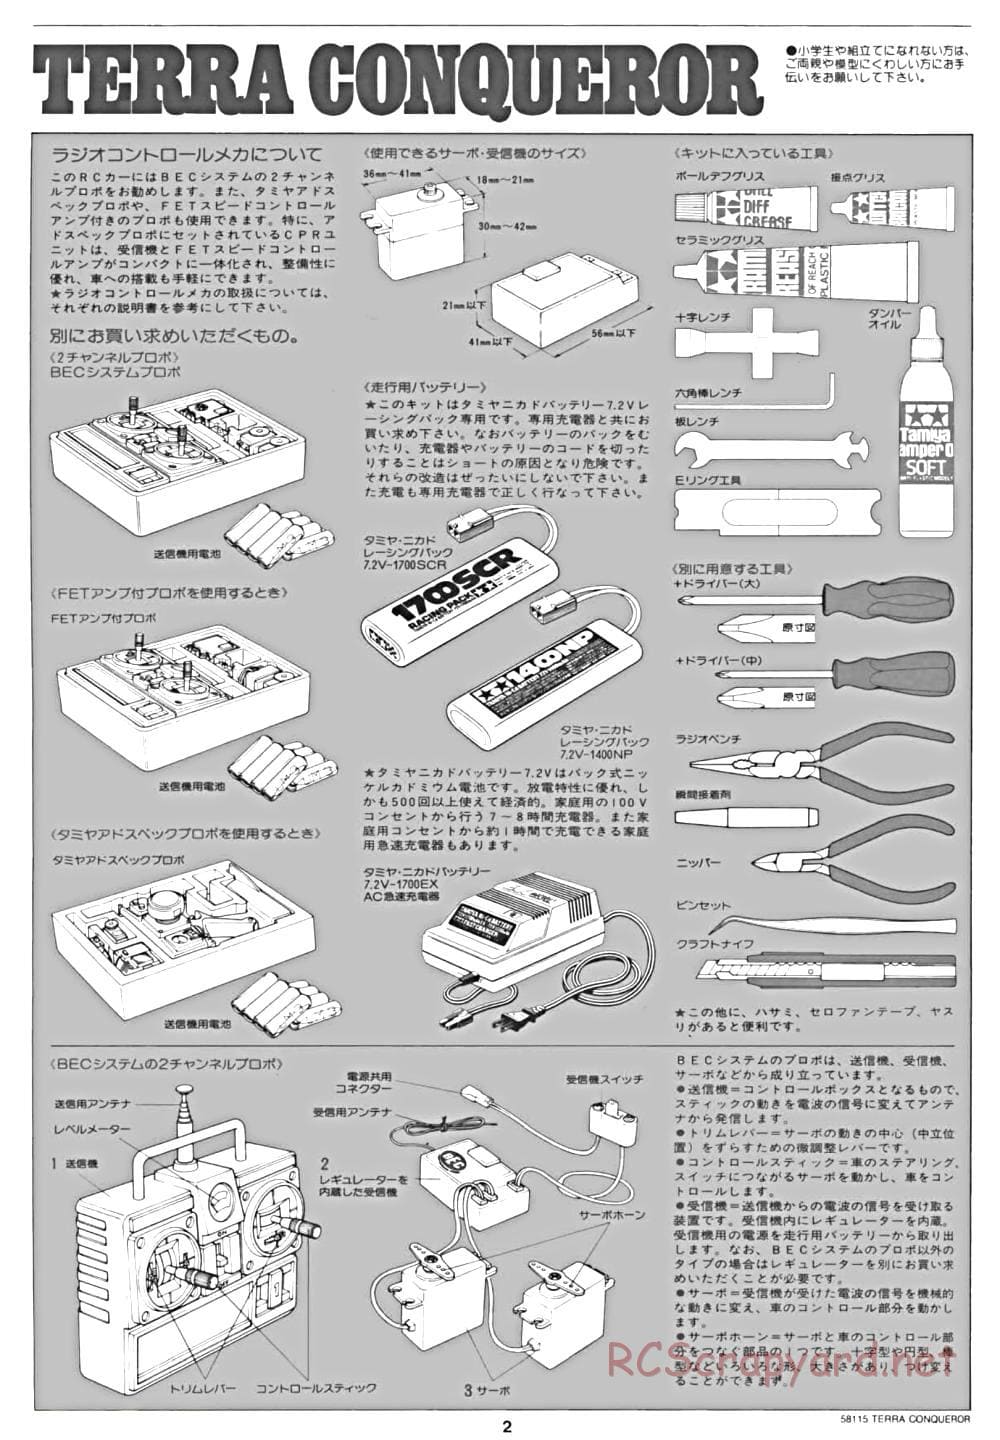 Tamiya - Terra Conqueror Chassis - Manual - Page 2